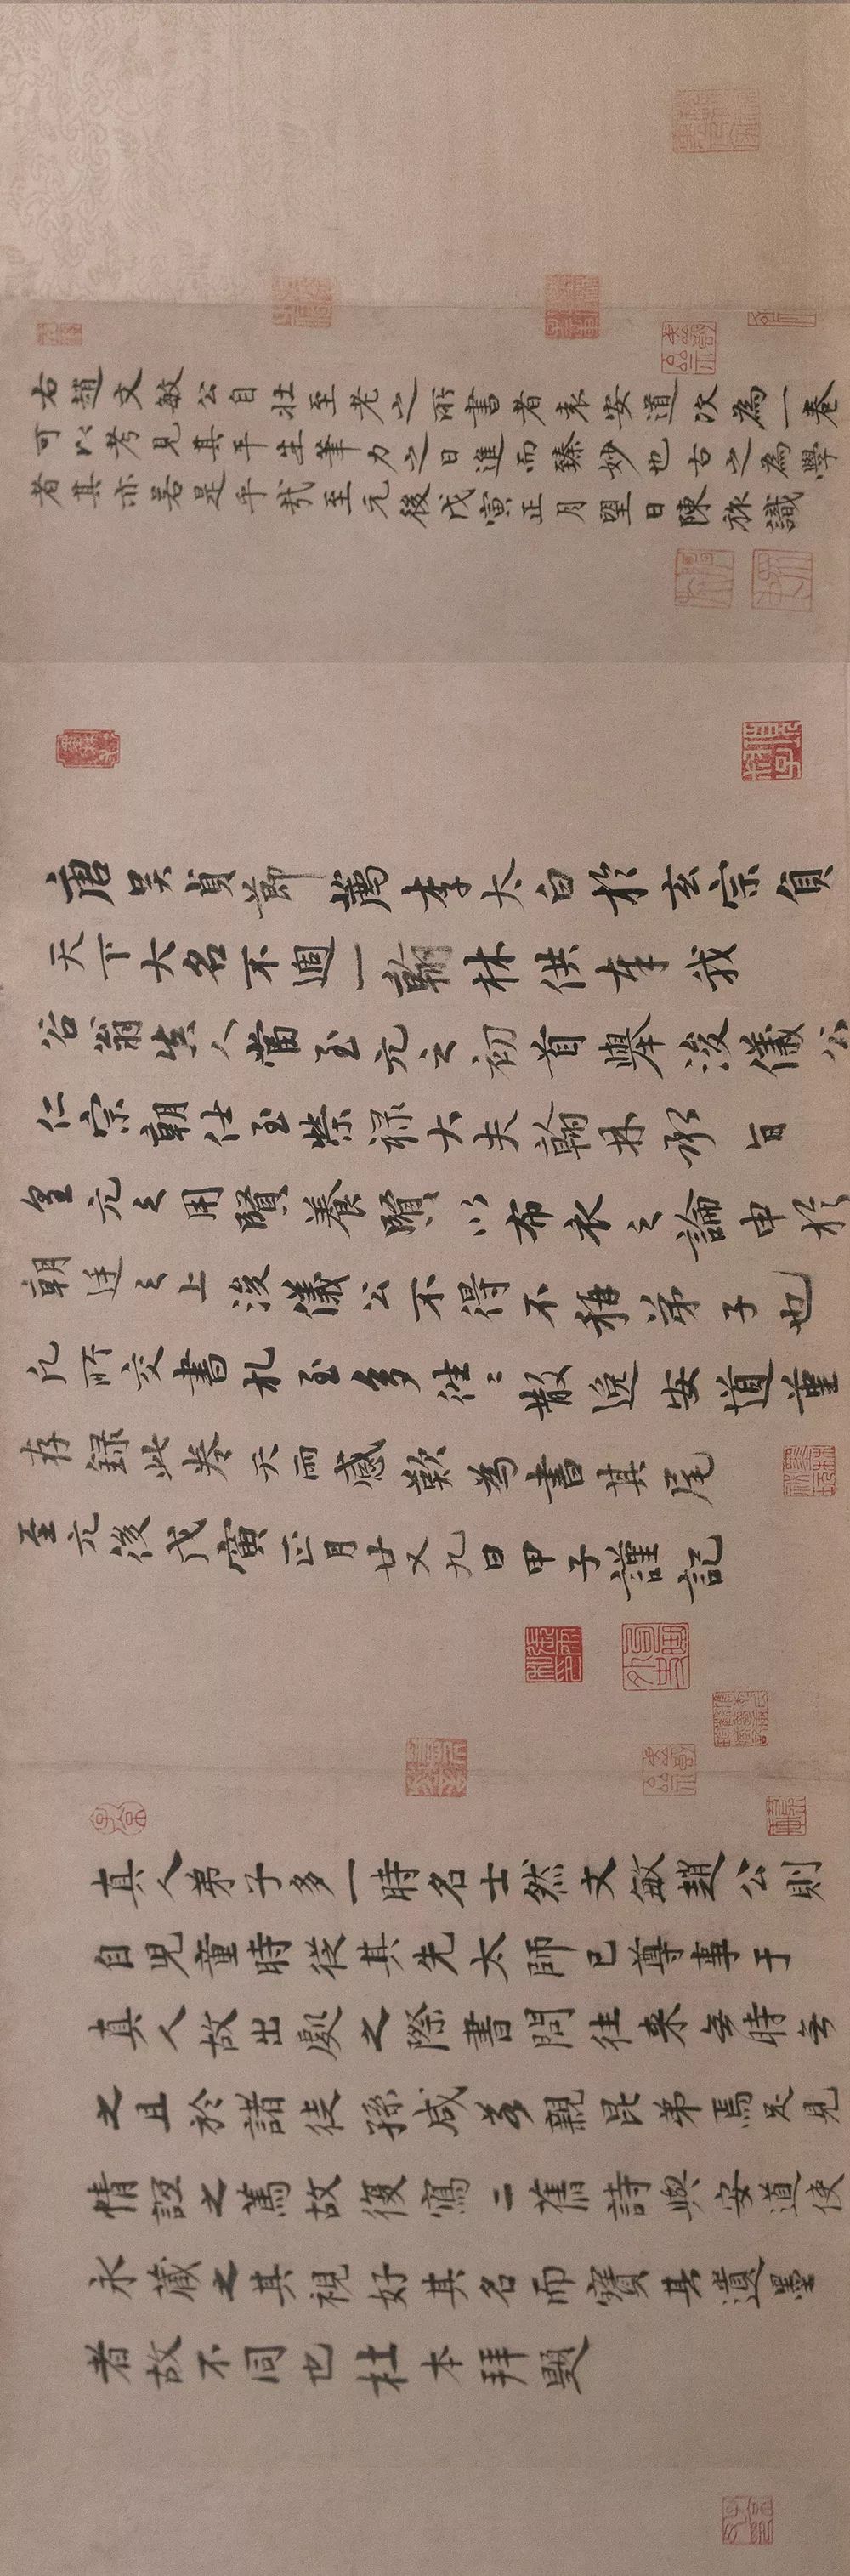 赵孟頫行书《三段帖卷》故宫博物院藏